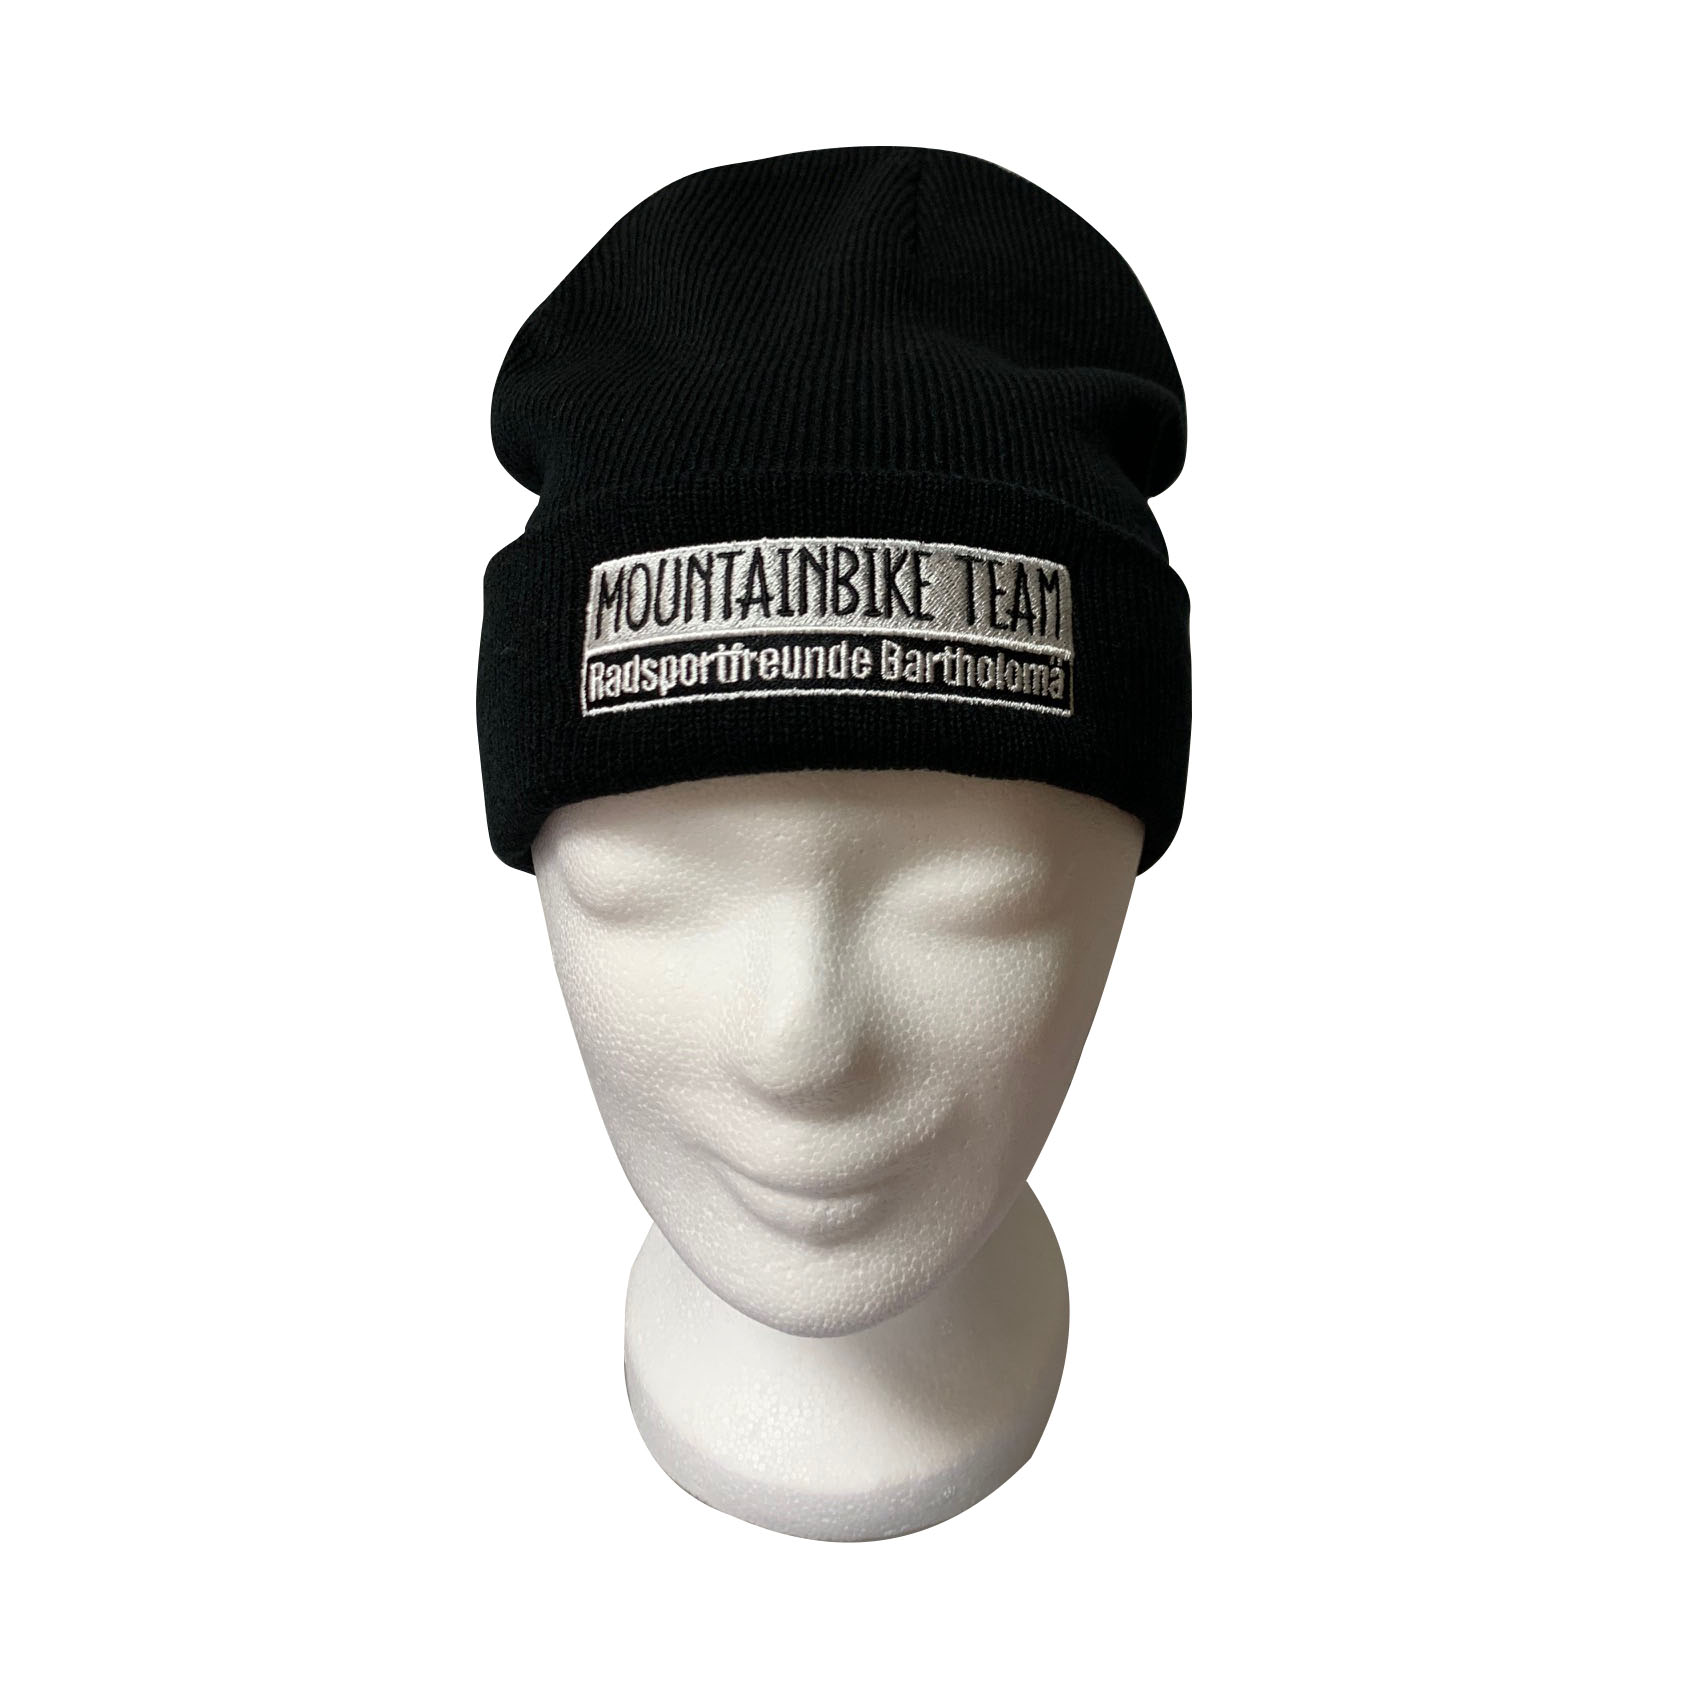 Beanie-Mütze für Radsportfreunde Bartholomä - schwarz mit Bestickung - Auf einem Mannequin-Kopf - Motiv 1